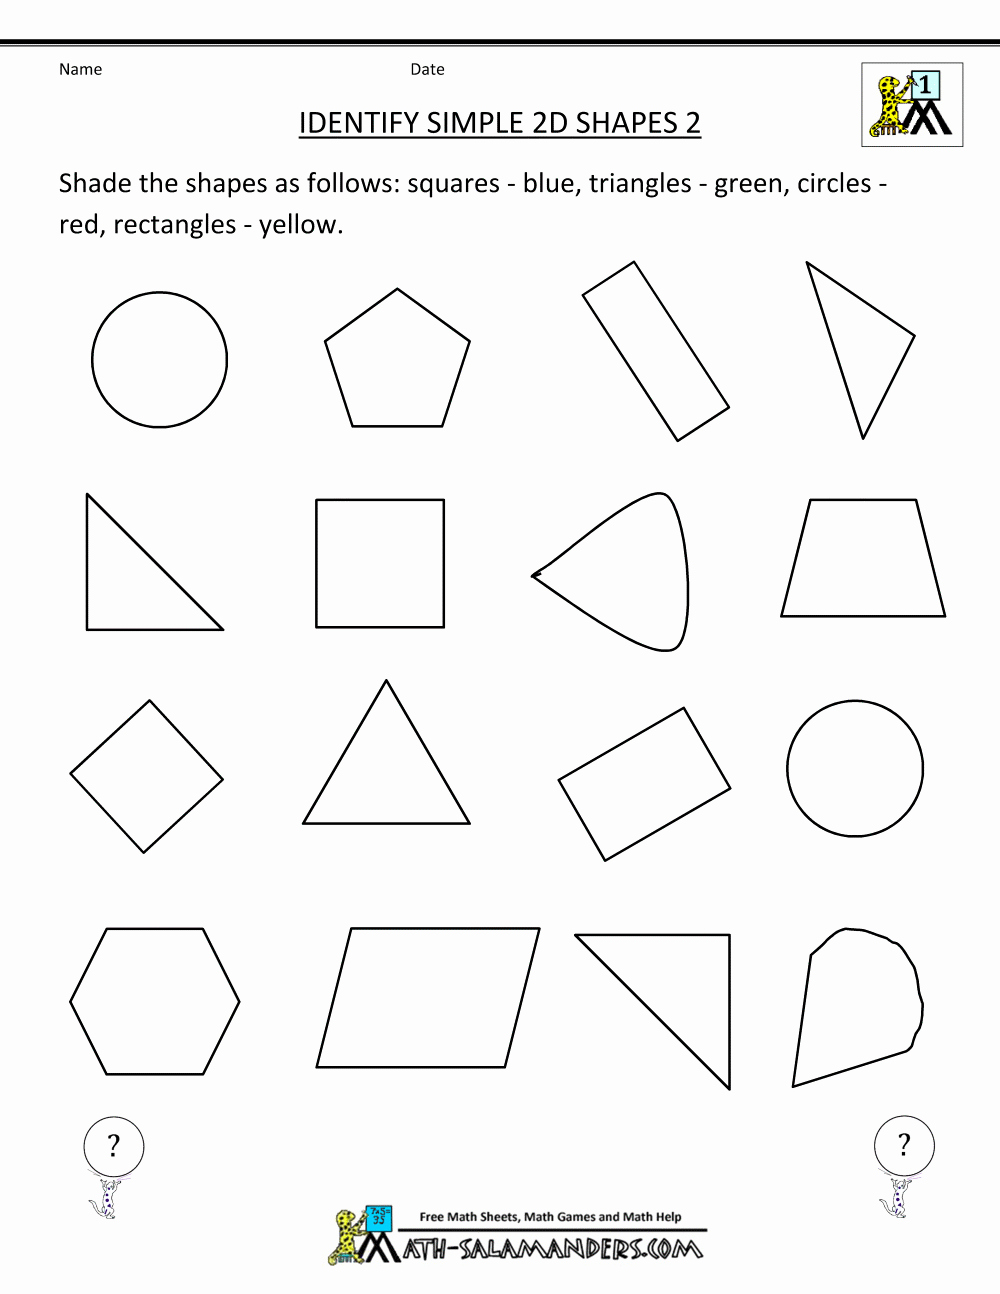 2 Dimensional Shapes Worksheet Luxury Free Printable Geometry Worksheets Identify Simple 2d